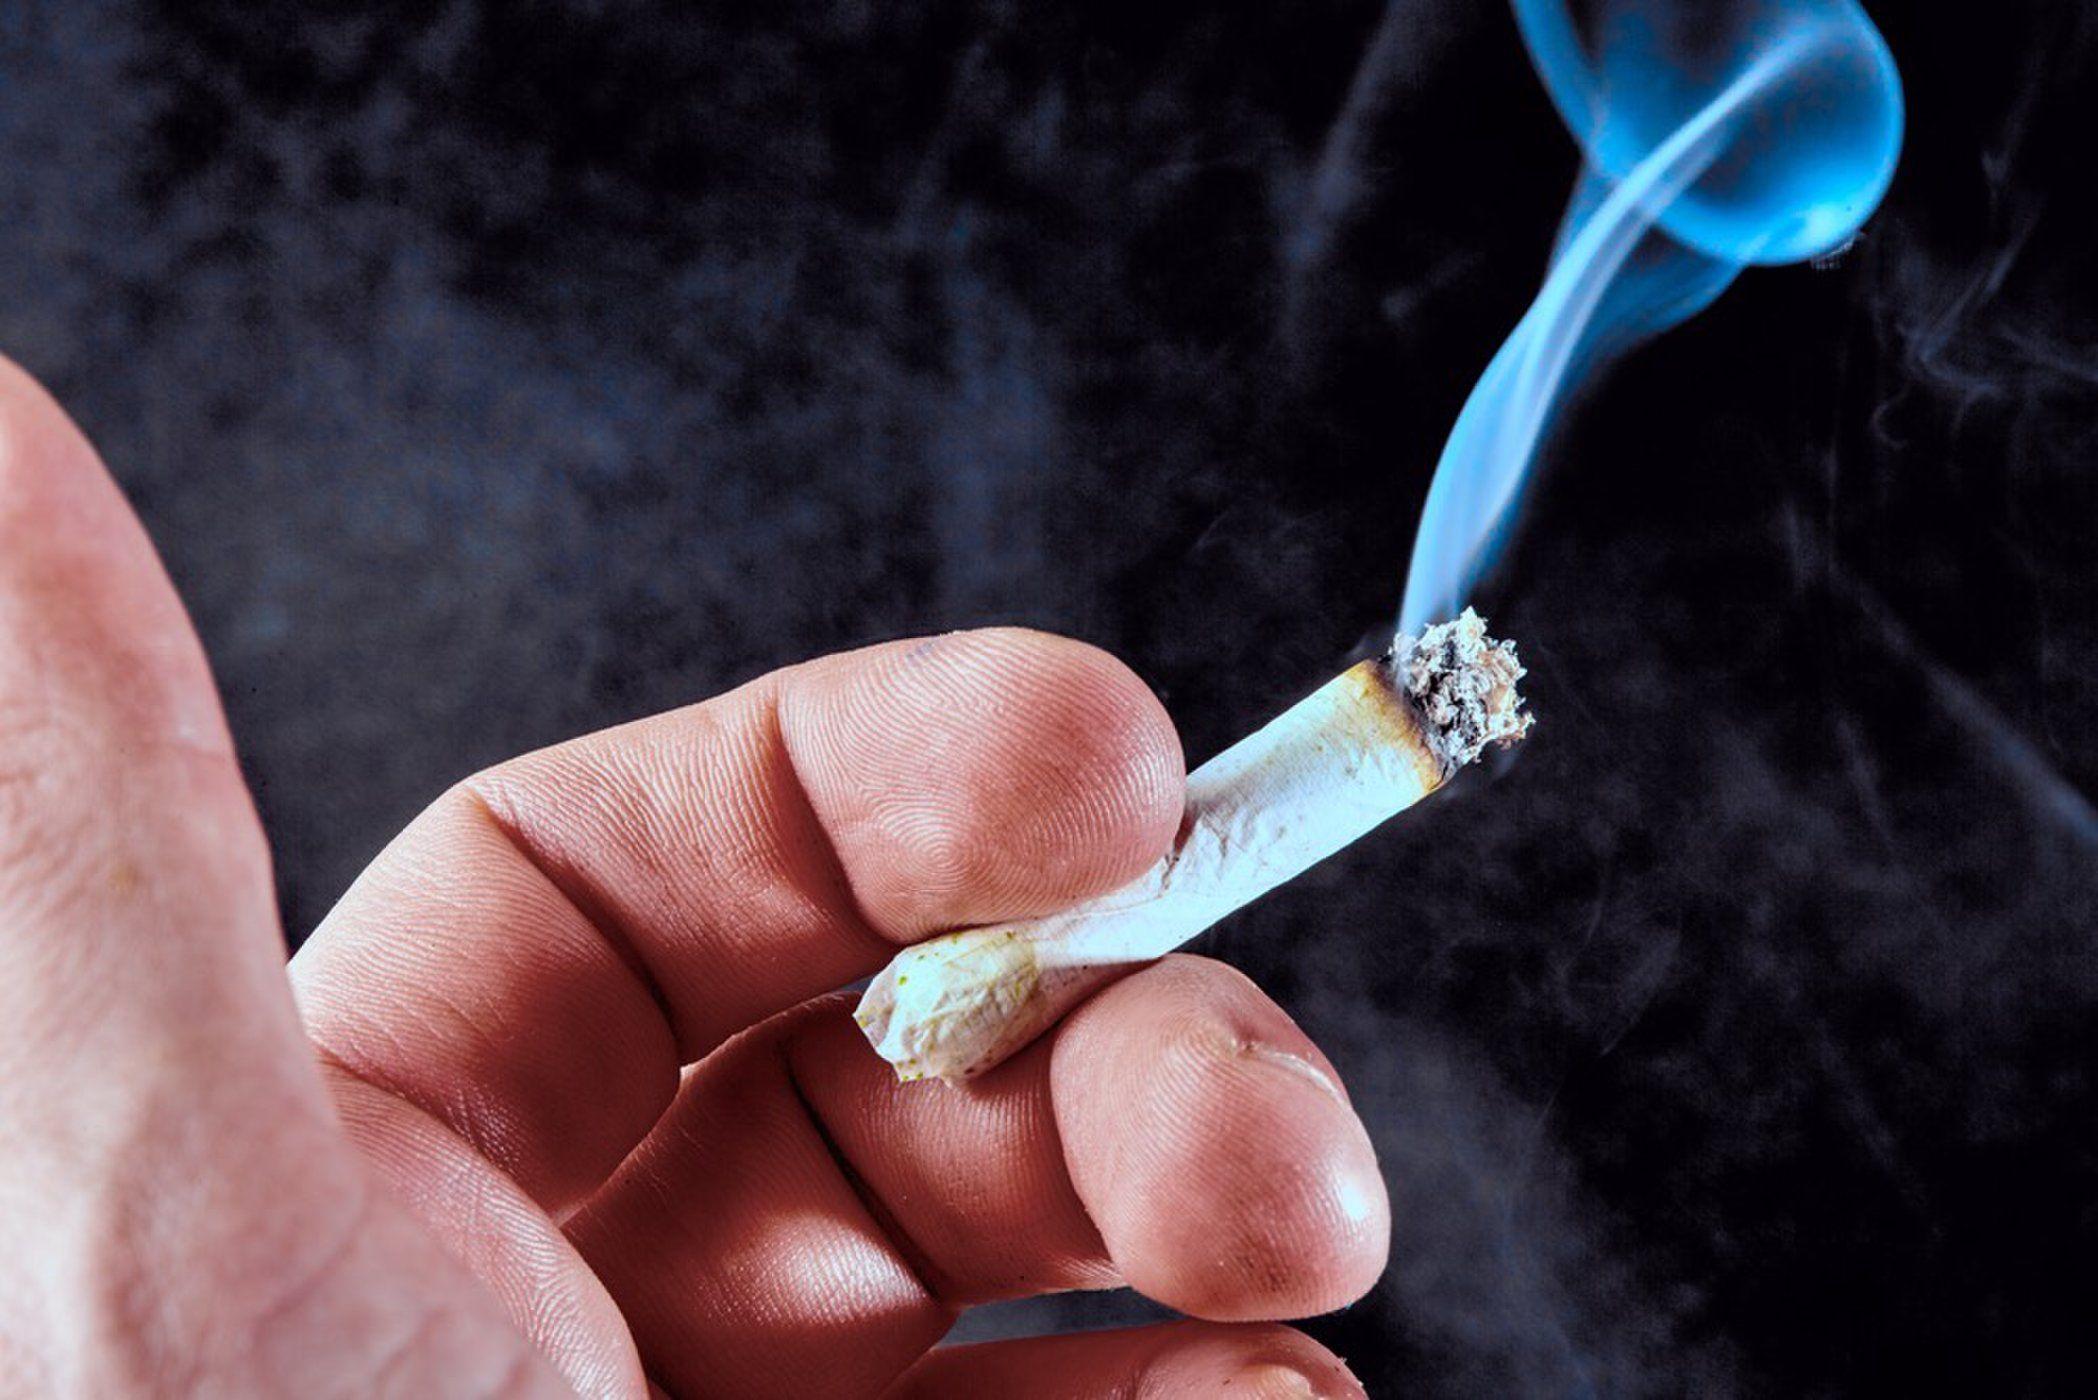 Курение марихуаны увеличивает риск депрессии